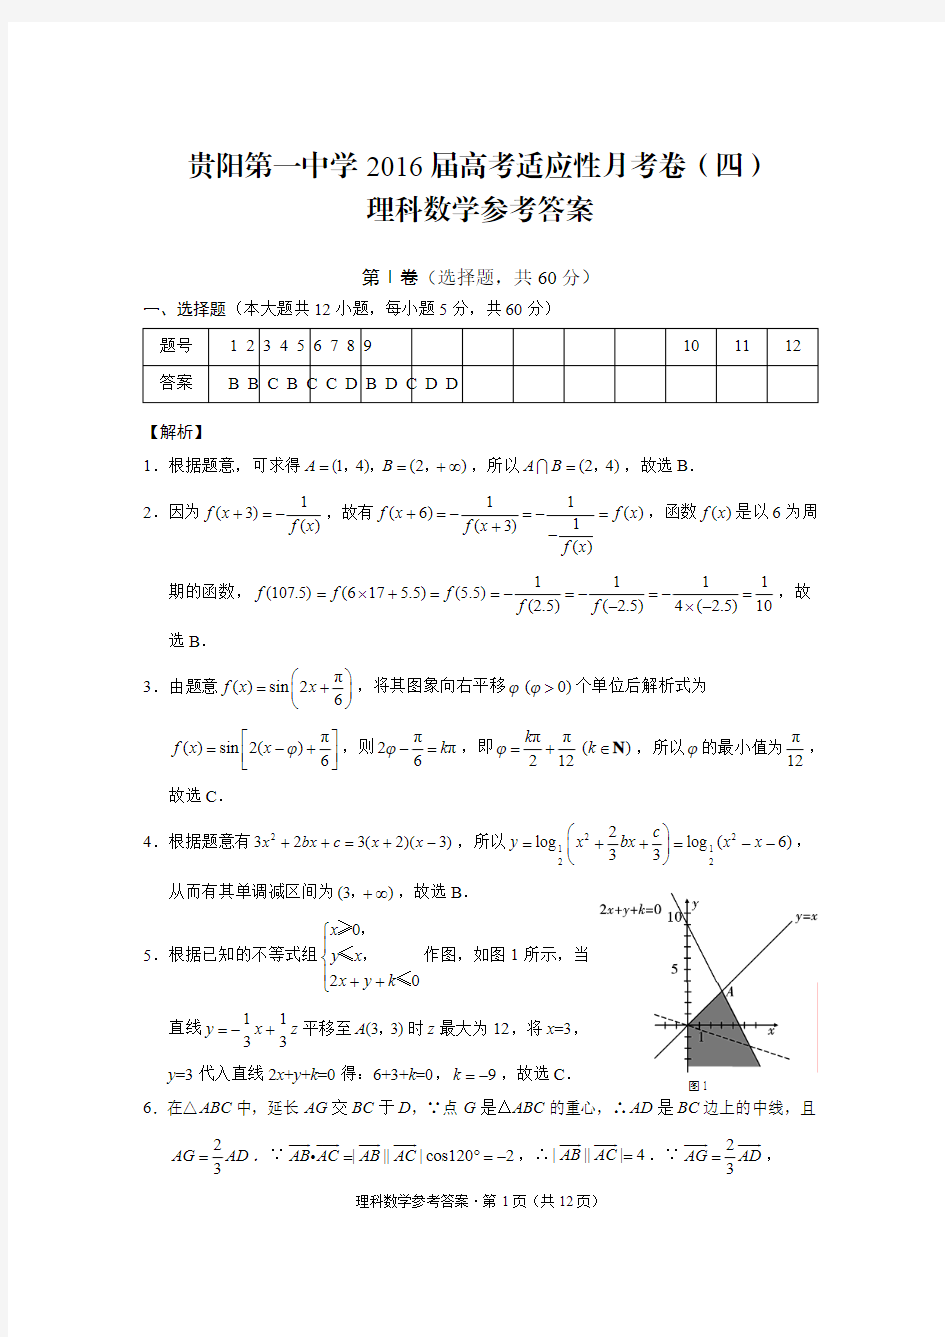 贵阳第一中学2016届高考适应性月考卷(四)理数-答案